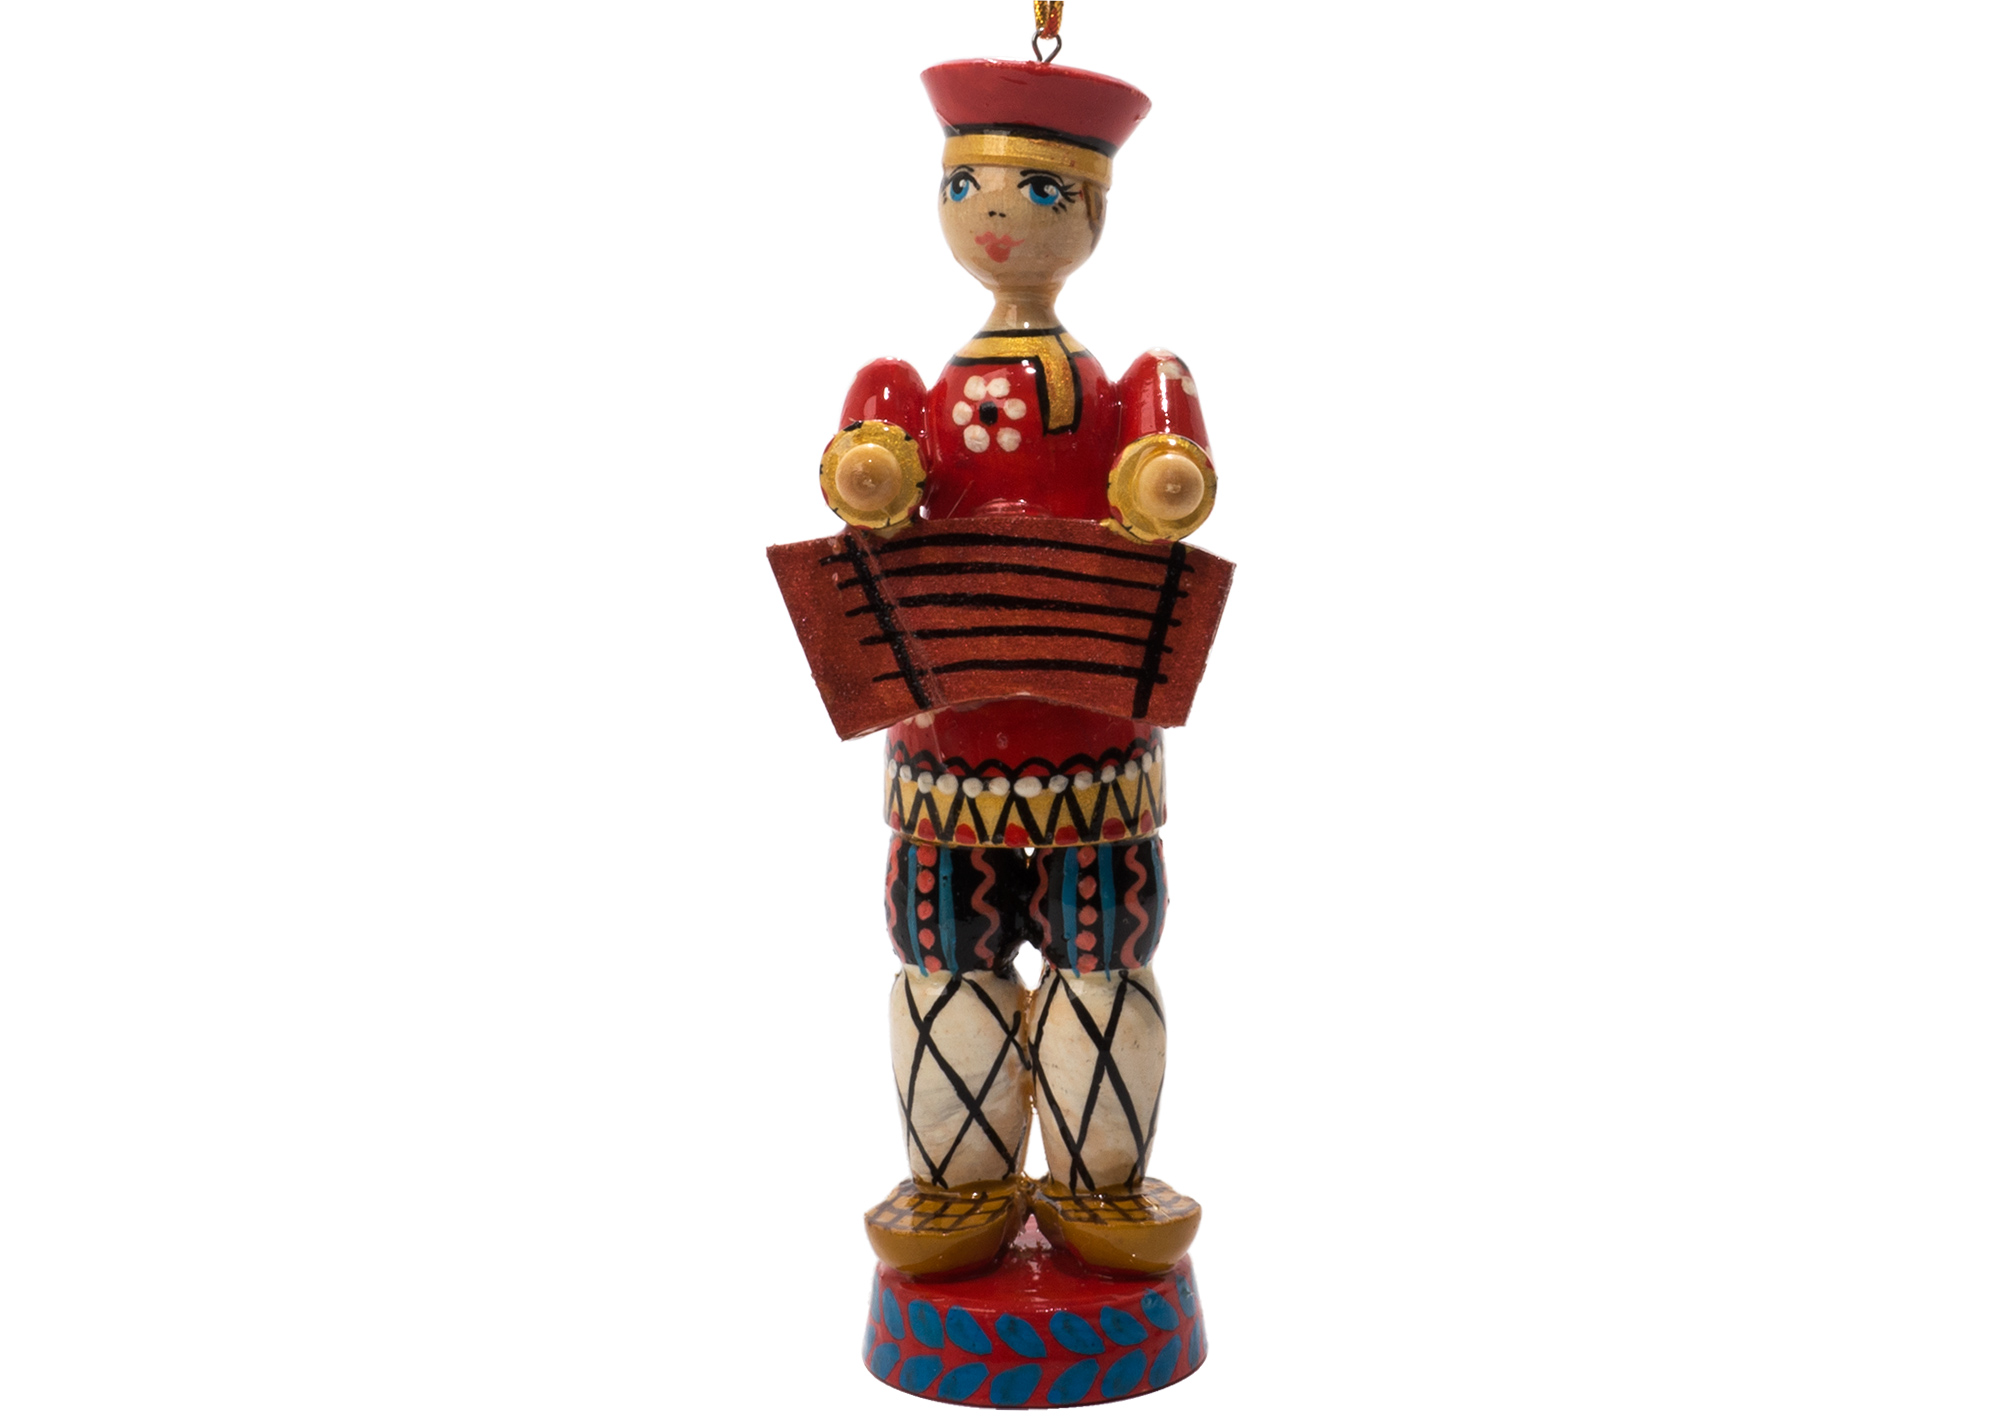 Buy Russian Folk Gusli Musician Ornament 5" at GoldenCockerel.com